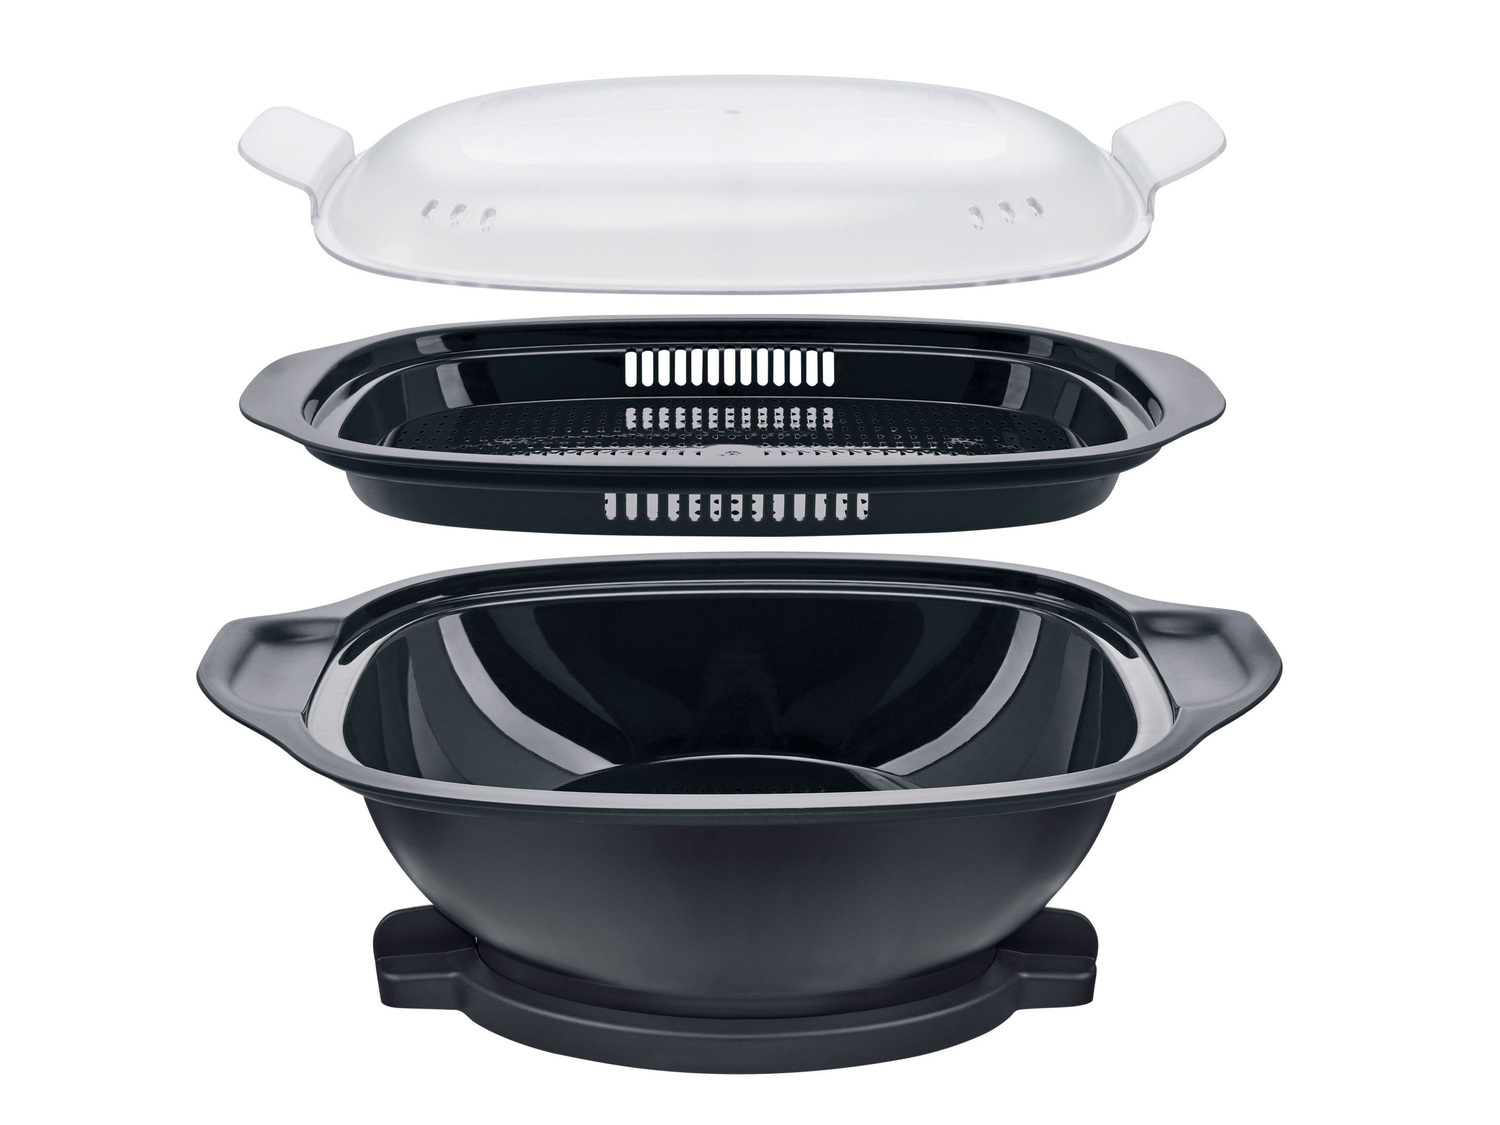 Robot da cucina multifunzione Monsieur Cuisine Smart Prezzo-lidl, prezzo 449.00 ...